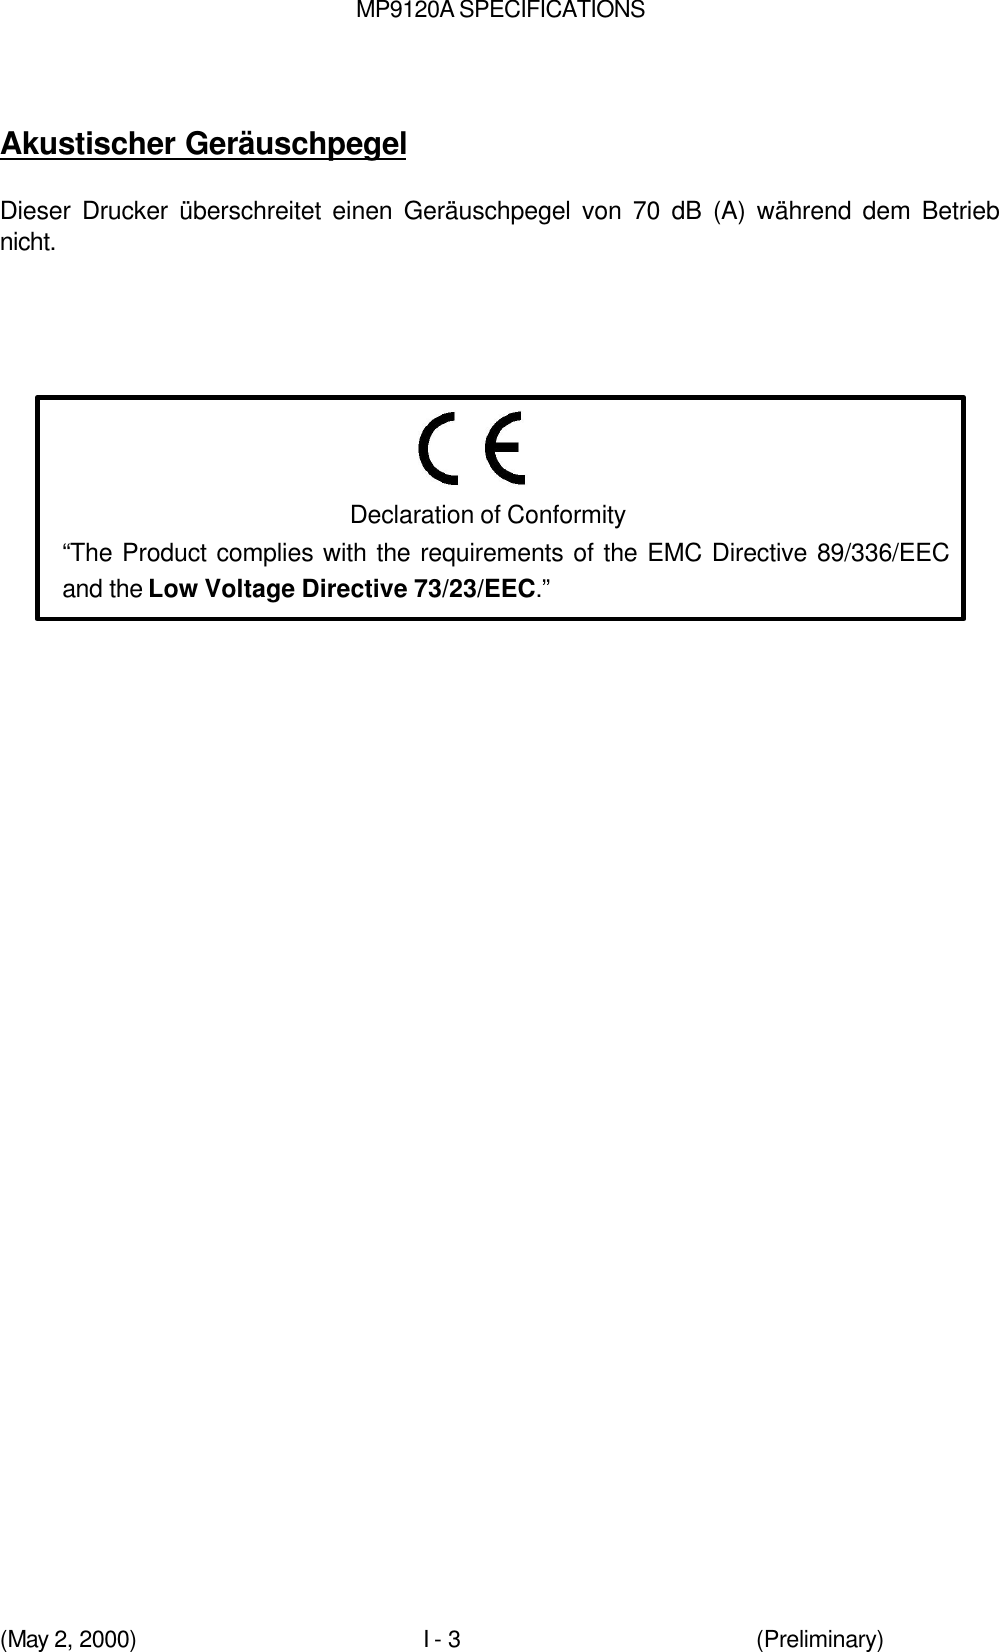 MP9120A SPECIFICATIONS(May 2, 2000)I - 3 (Preliminary)Akustischer GeräuschpegelDieser Drucker überschreitet einen Geräuschpegel von 70 dB (A) während dem Betriebnicht.Declaration of Conformity“The Product complies with the requirements of the EMC Directive 89/336/EECand the Low Voltage Directive 73/23/EEC.”